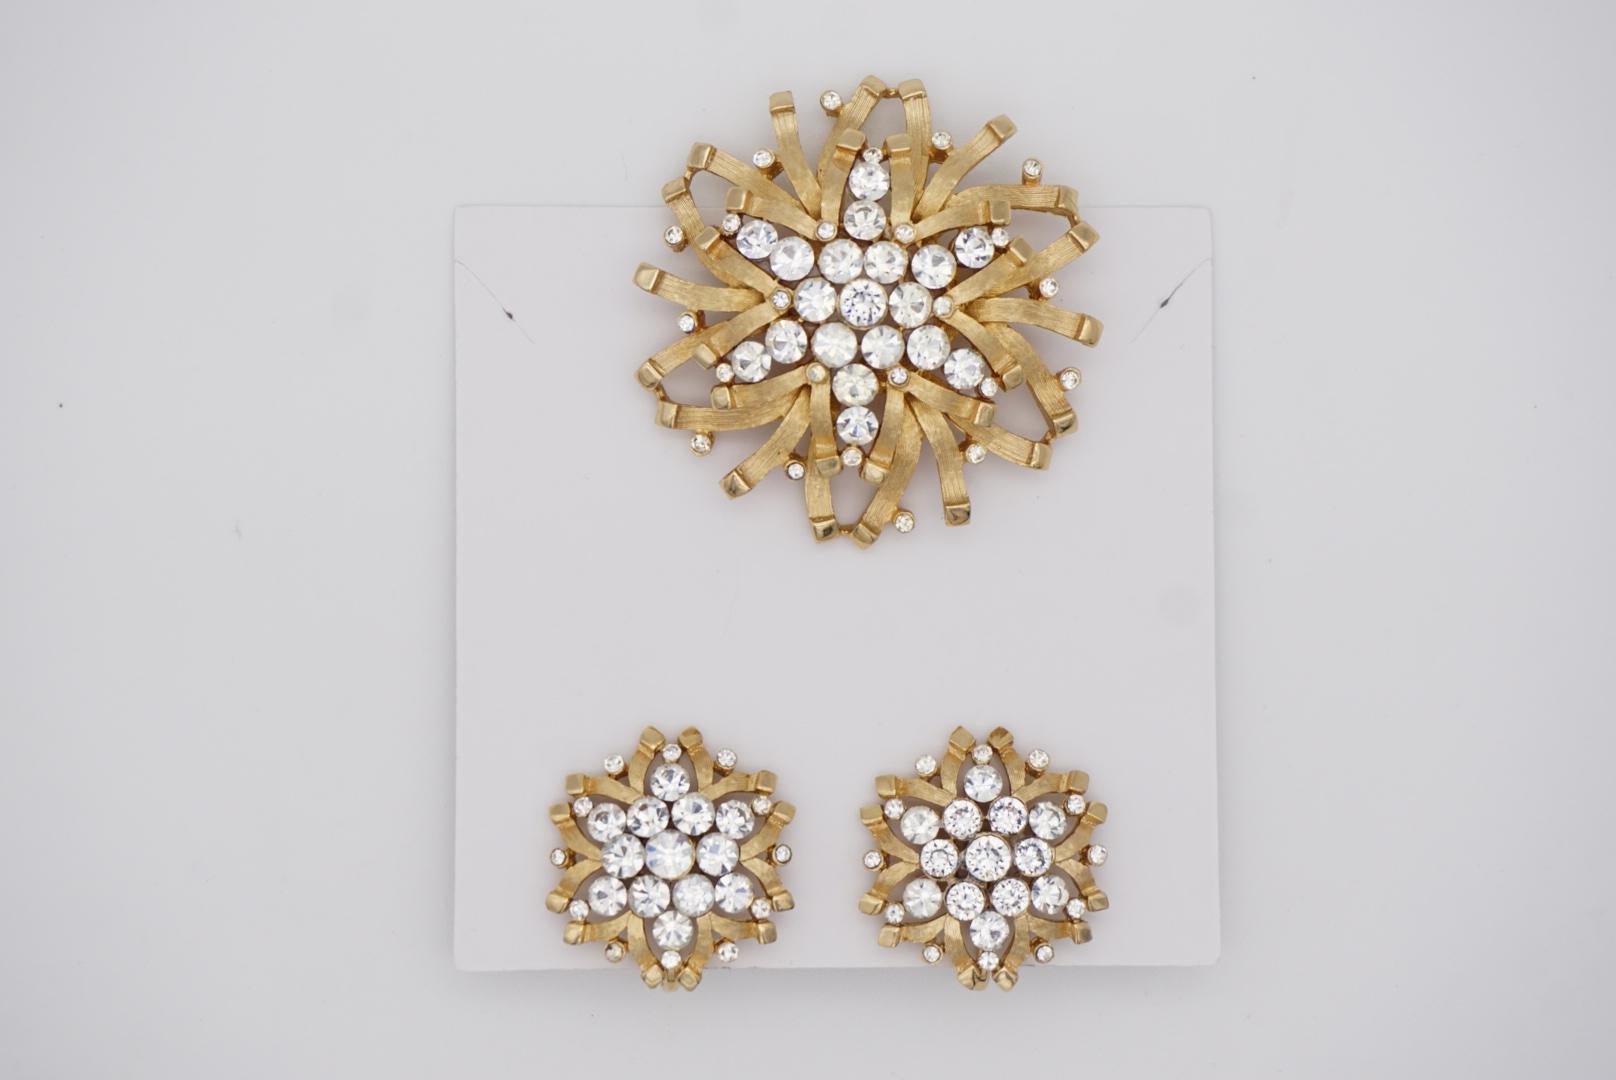 Crown Trifari Vintage 1950s Snowflakes Crystals Jewellery Set Earrings Brooch For Sale 4